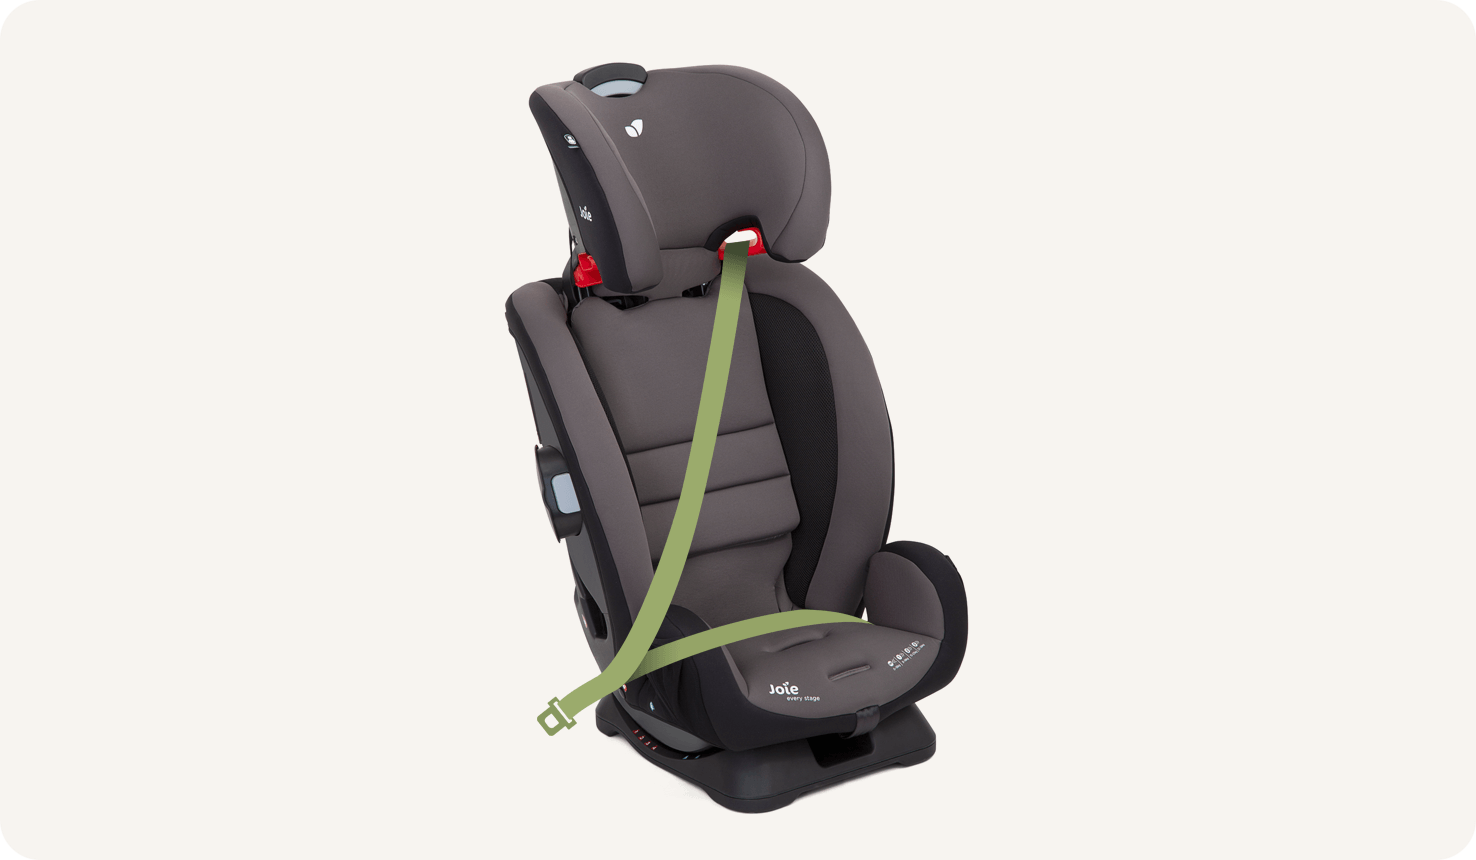 Una silla de coche Joie Every Stage de color negro y gris con el arnés oculto y un cinturón de coche animado verde que sujeta la silla.